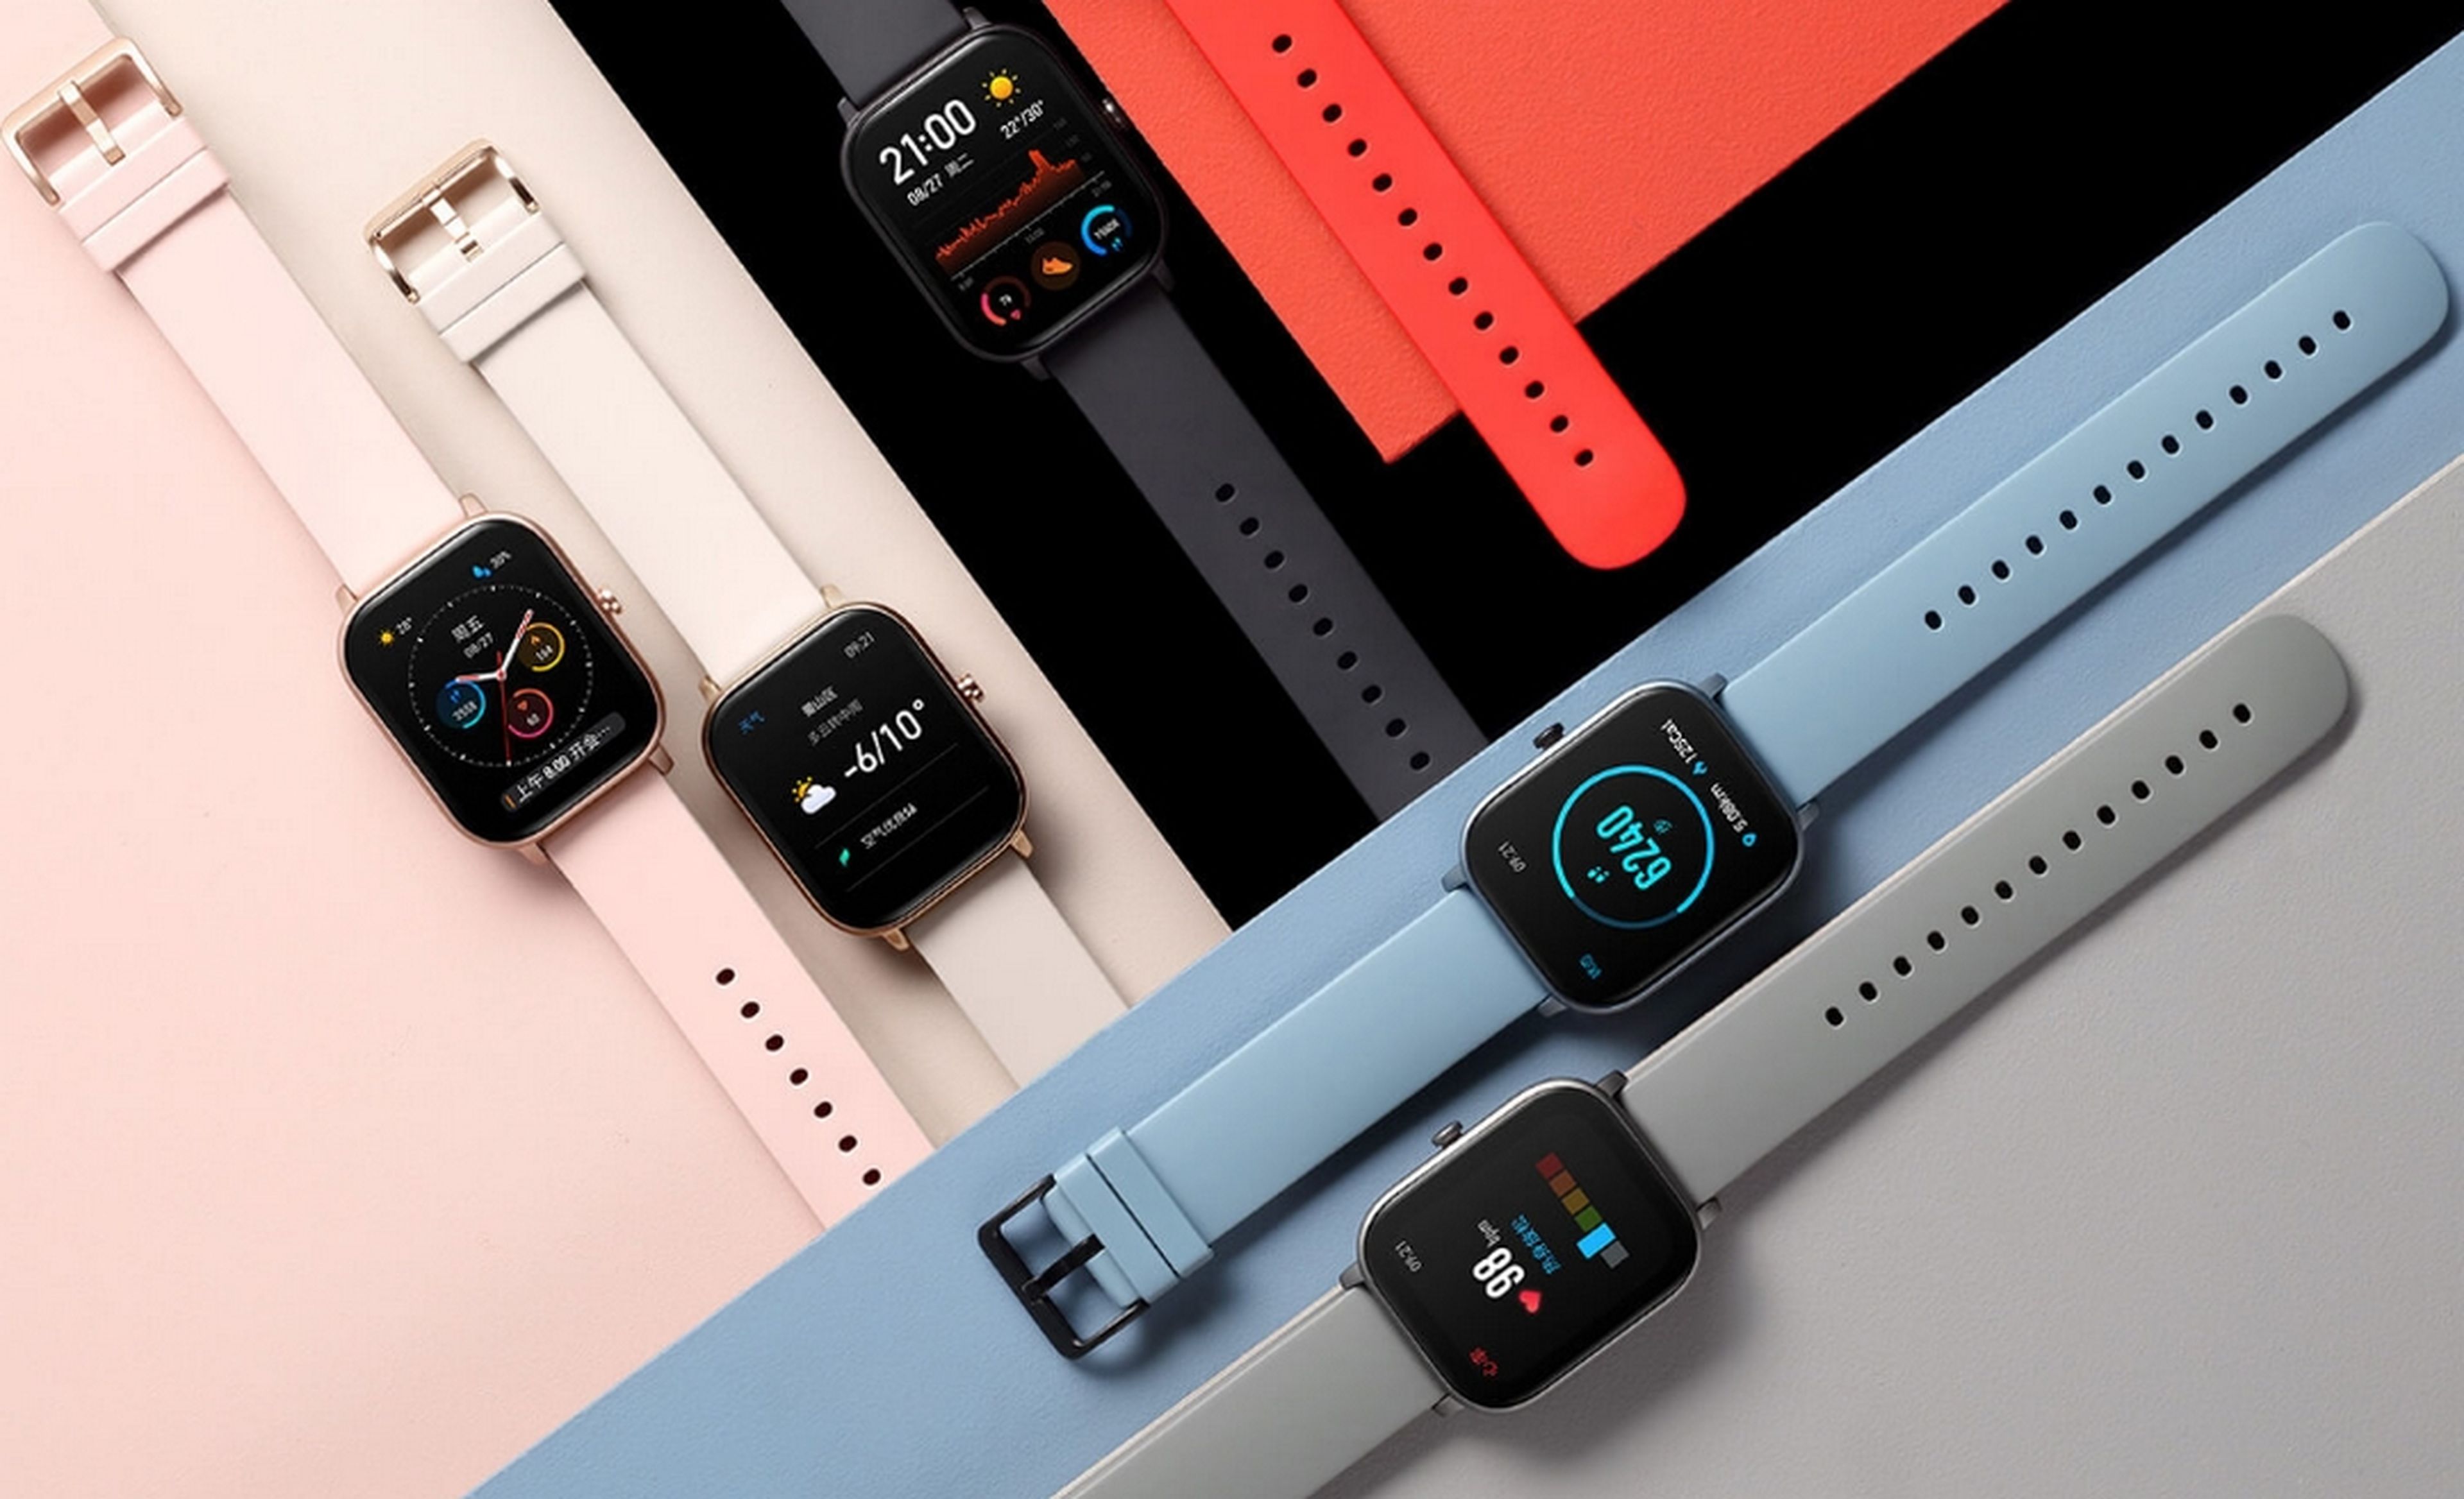 Este es el nuevo Amazfit GTS, el mejor clon del Apple Watch que vas a encontrar